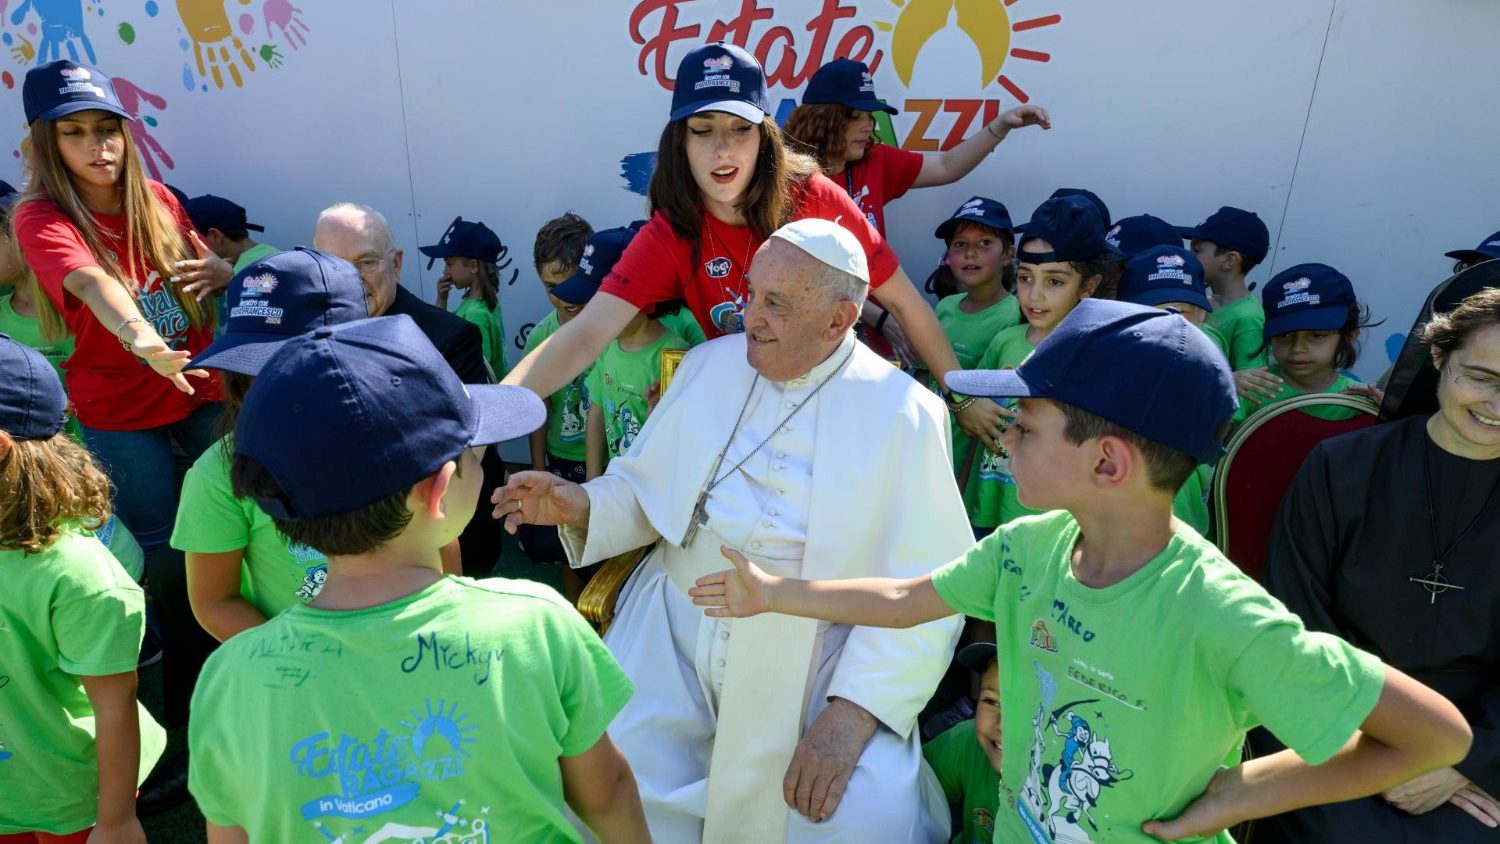 Paus Franciscus omringd door kinderen in groene T-shirts op het zomerkamp van het Vaticaan.